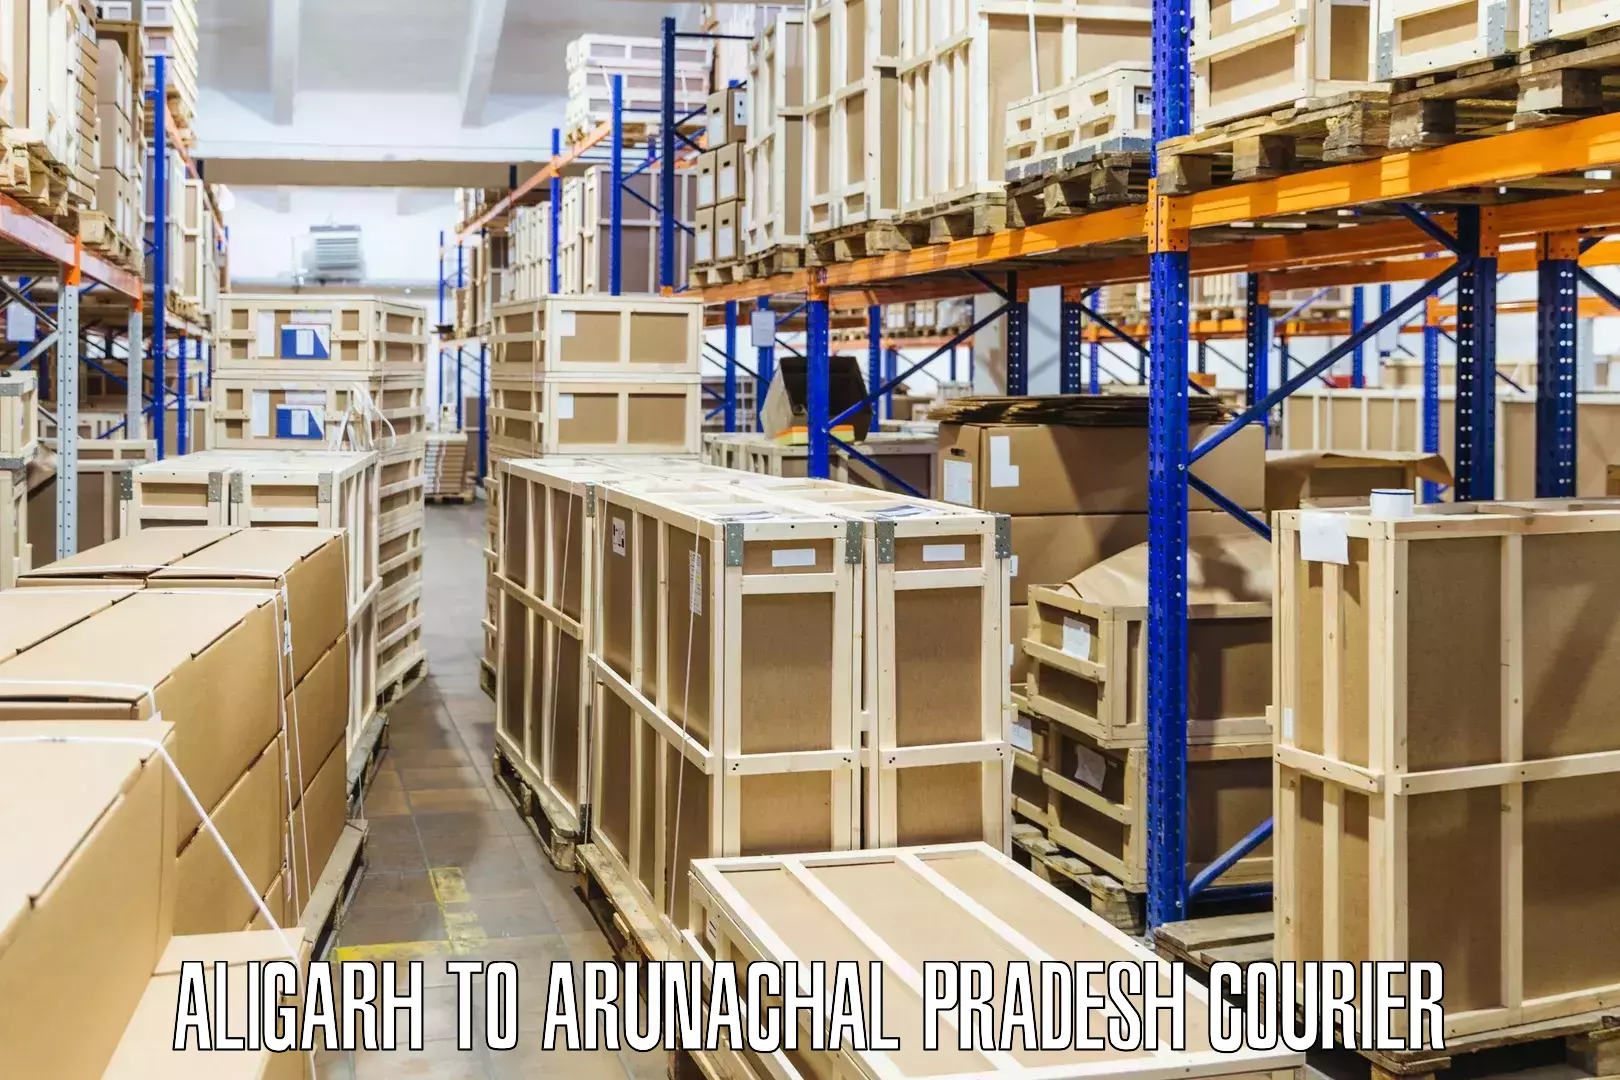 International parcel service Aligarh to Arunachal Pradesh